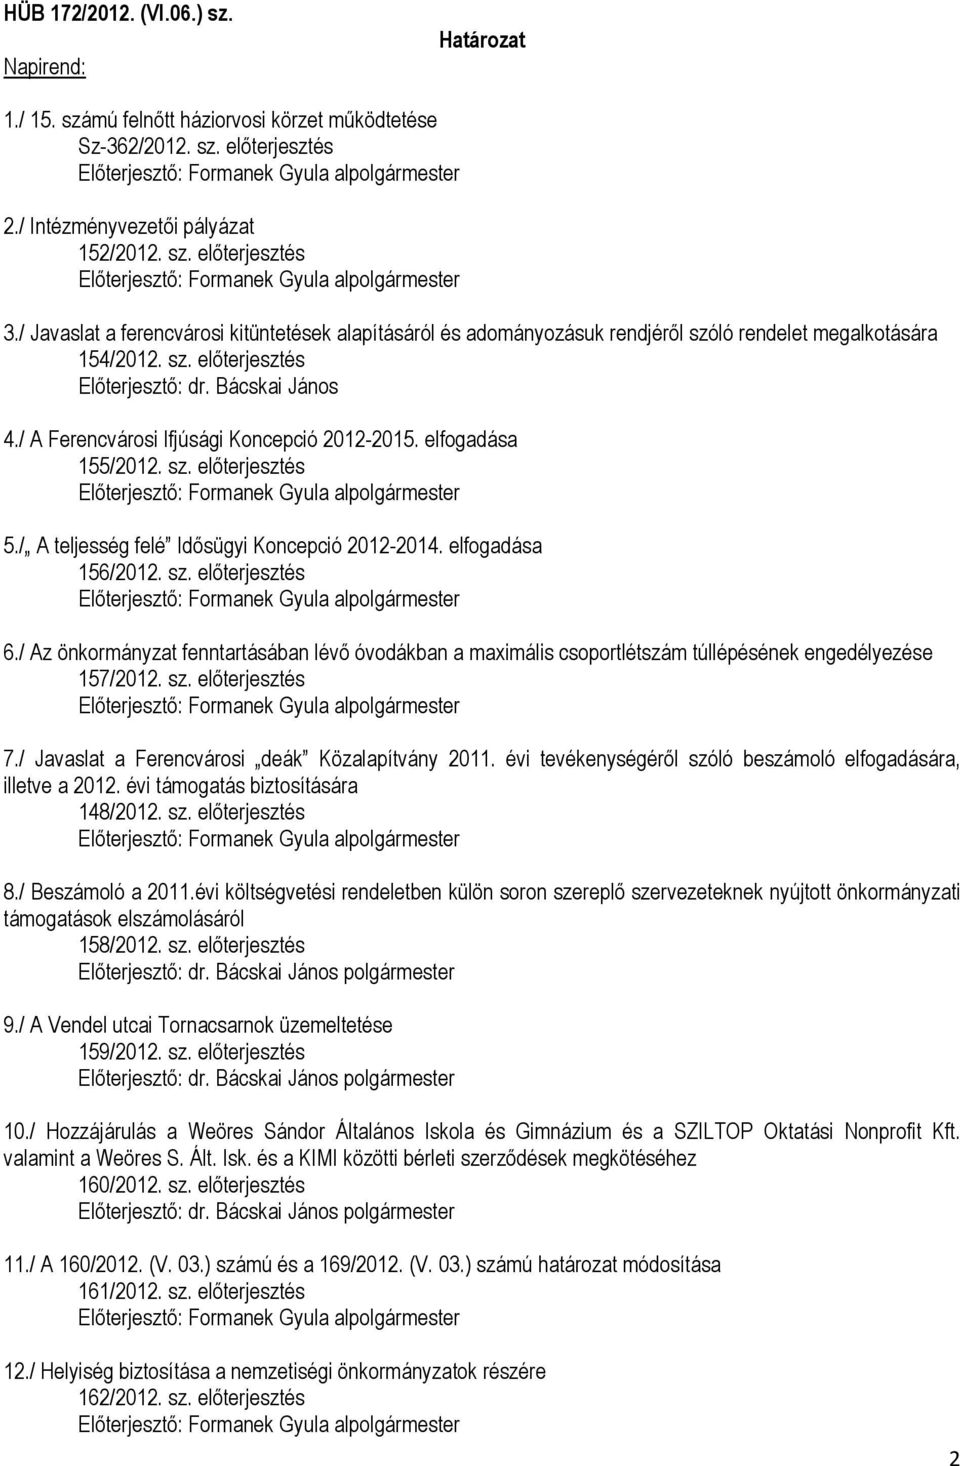 / A Ferencvárosi Ifjúsági Koncepció 2012-2015. elfogadása 155/2012. sz. előterjesztés 5./ A teljesség felé Idősügyi Koncepció 2012-2014. elfogadása 156/2012. sz. előterjesztés 6.